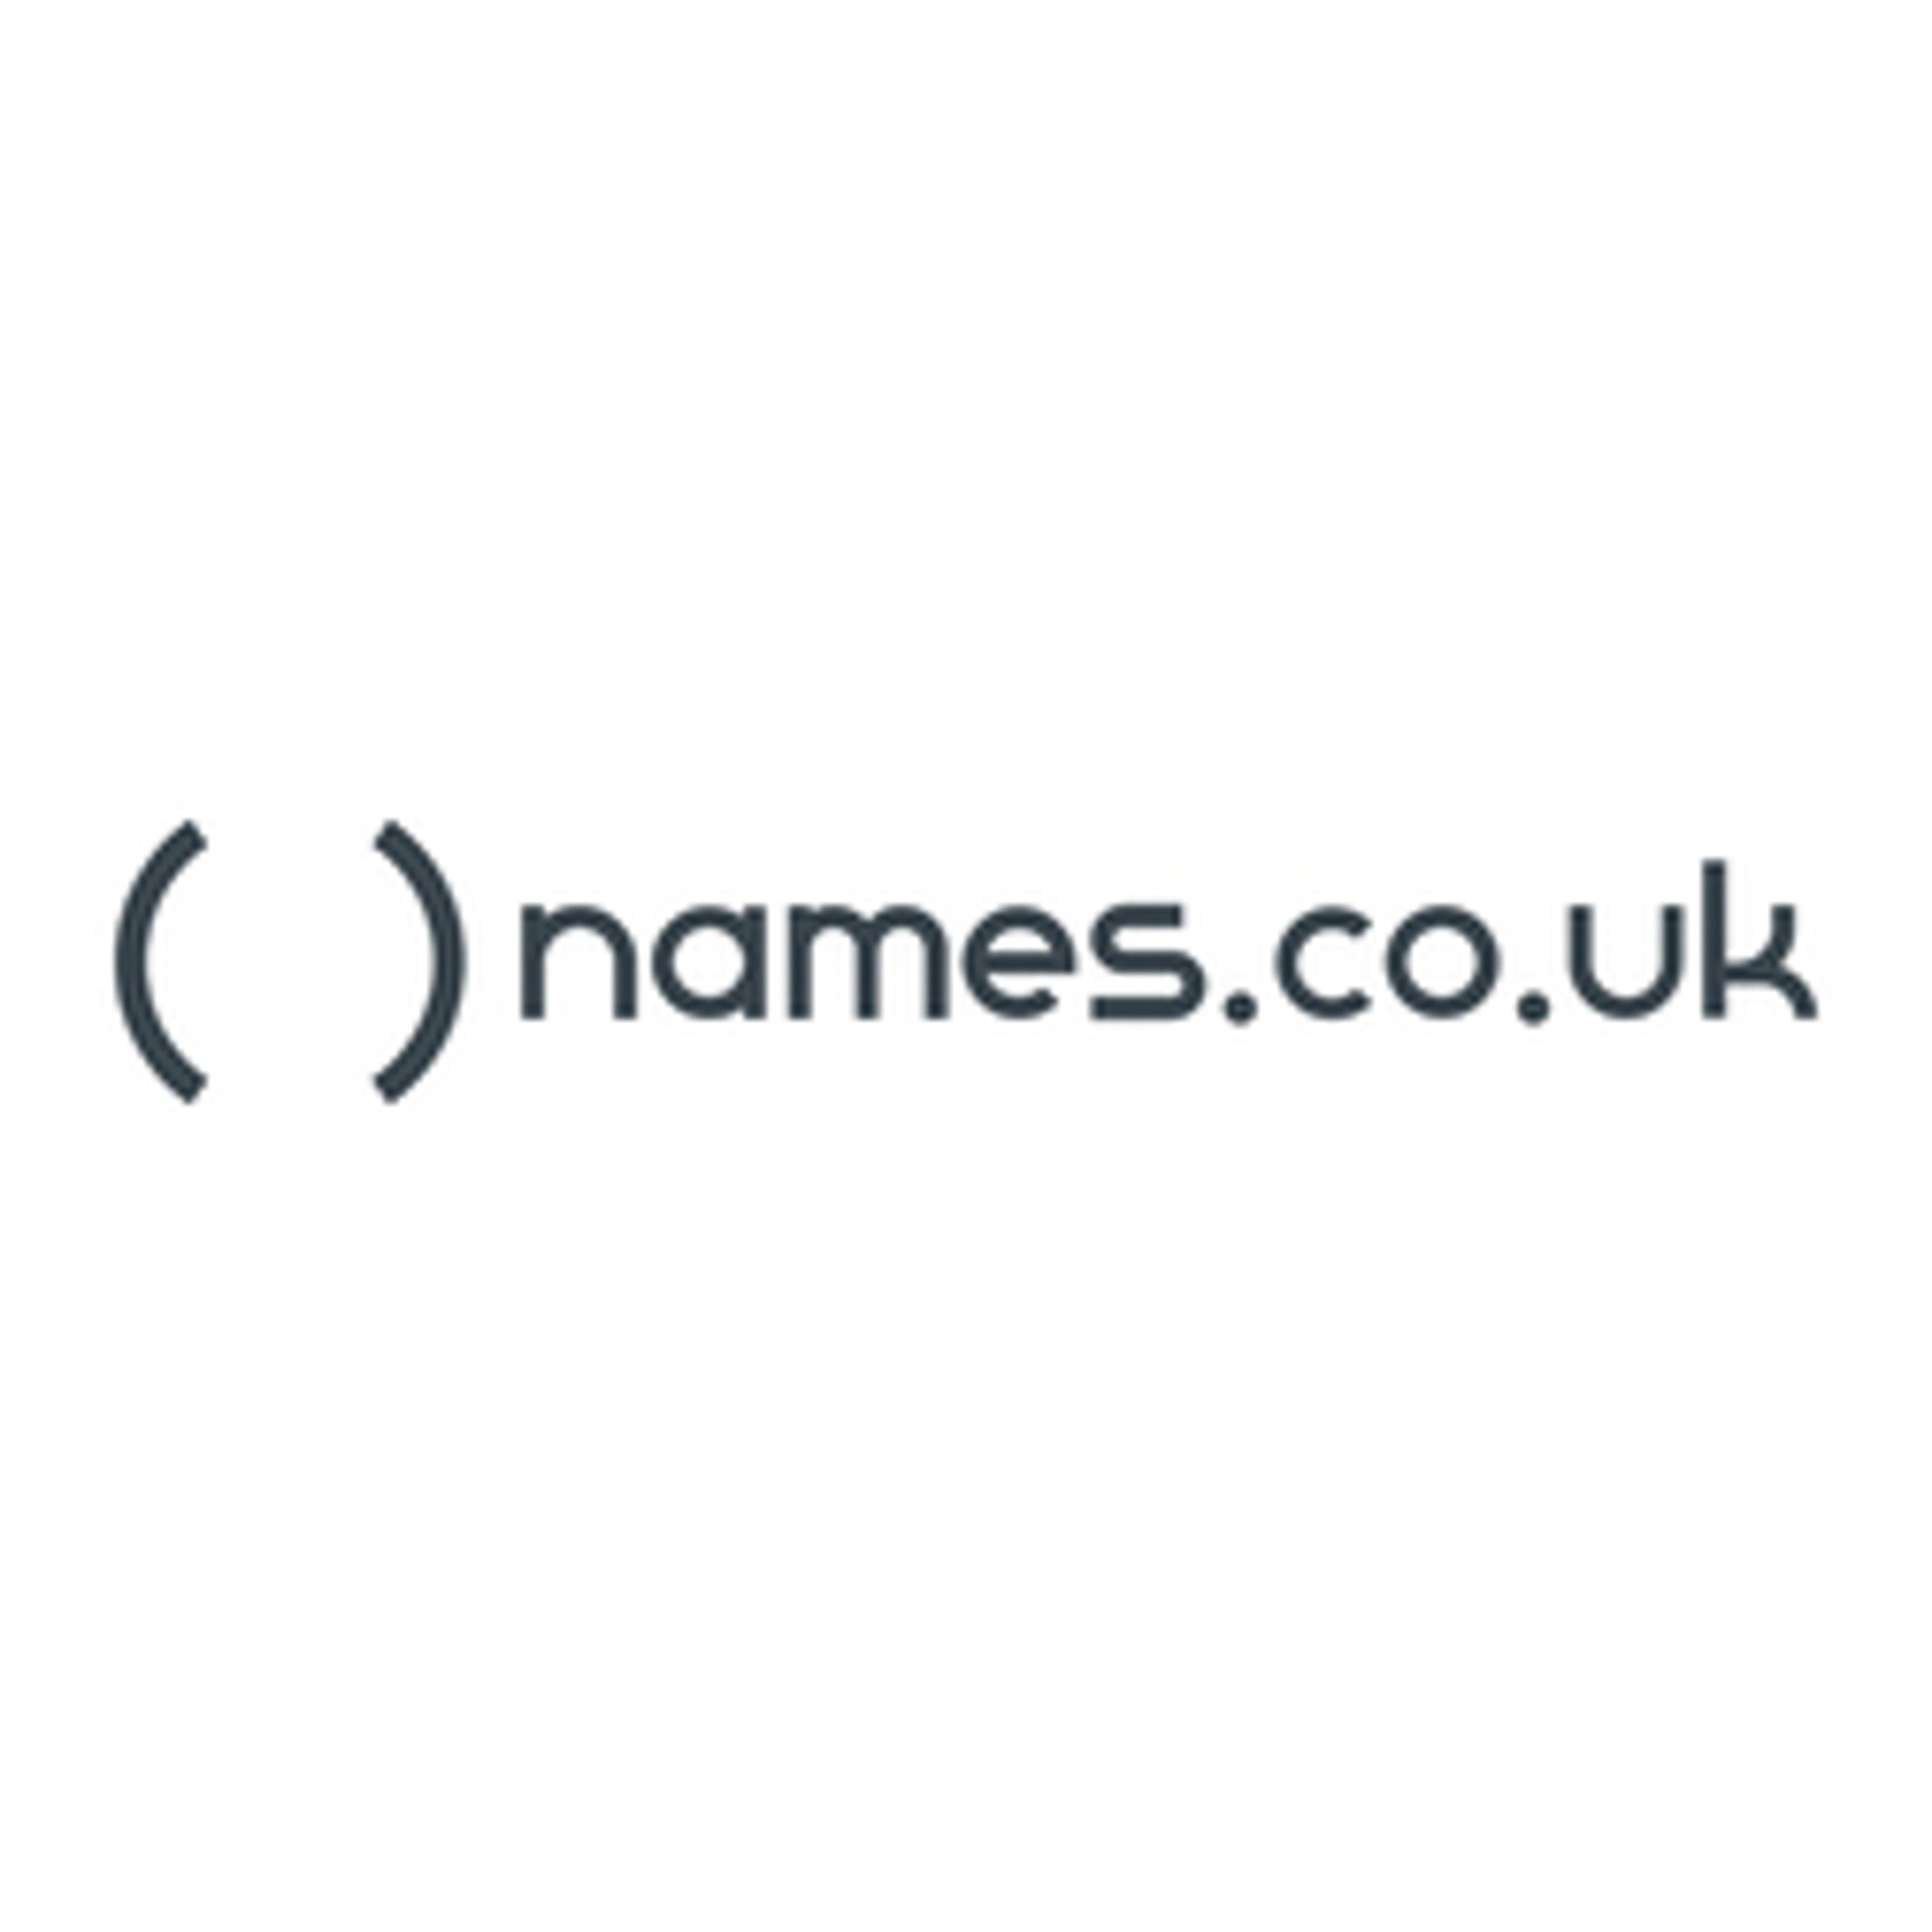  Names.co.uk 